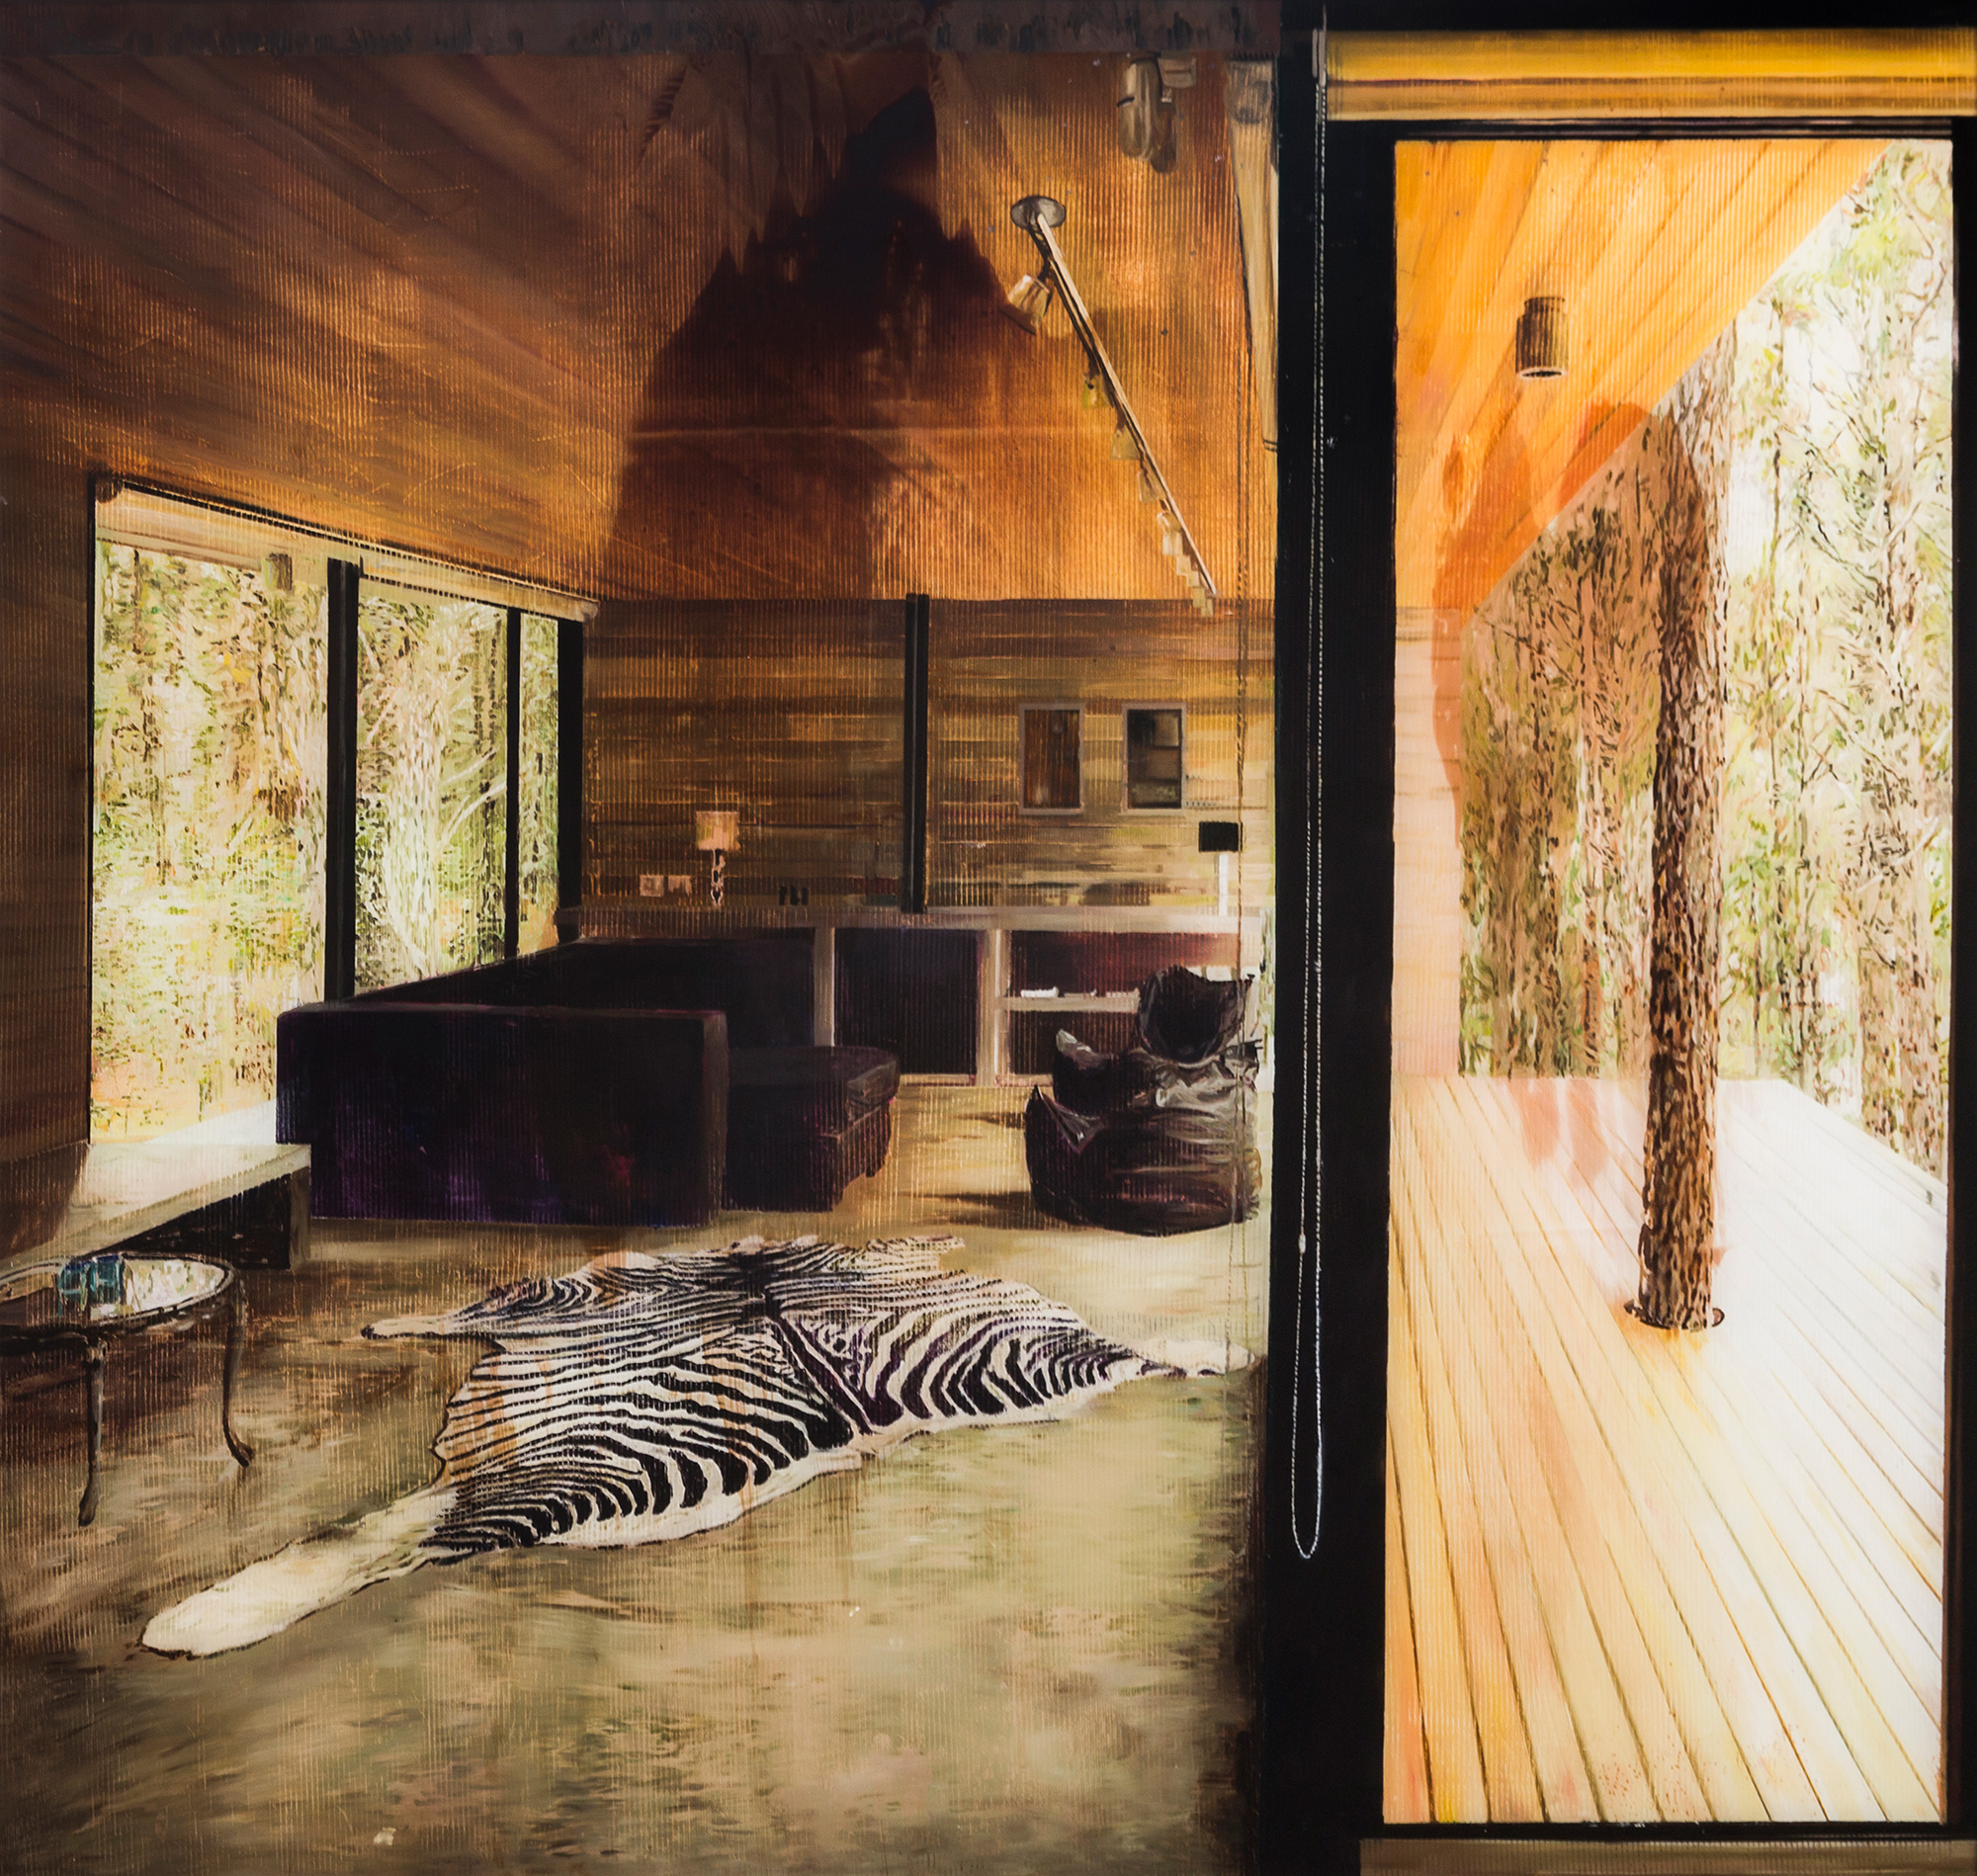 Zebras-House-2015-oil-on-plexiglass-140X150cm